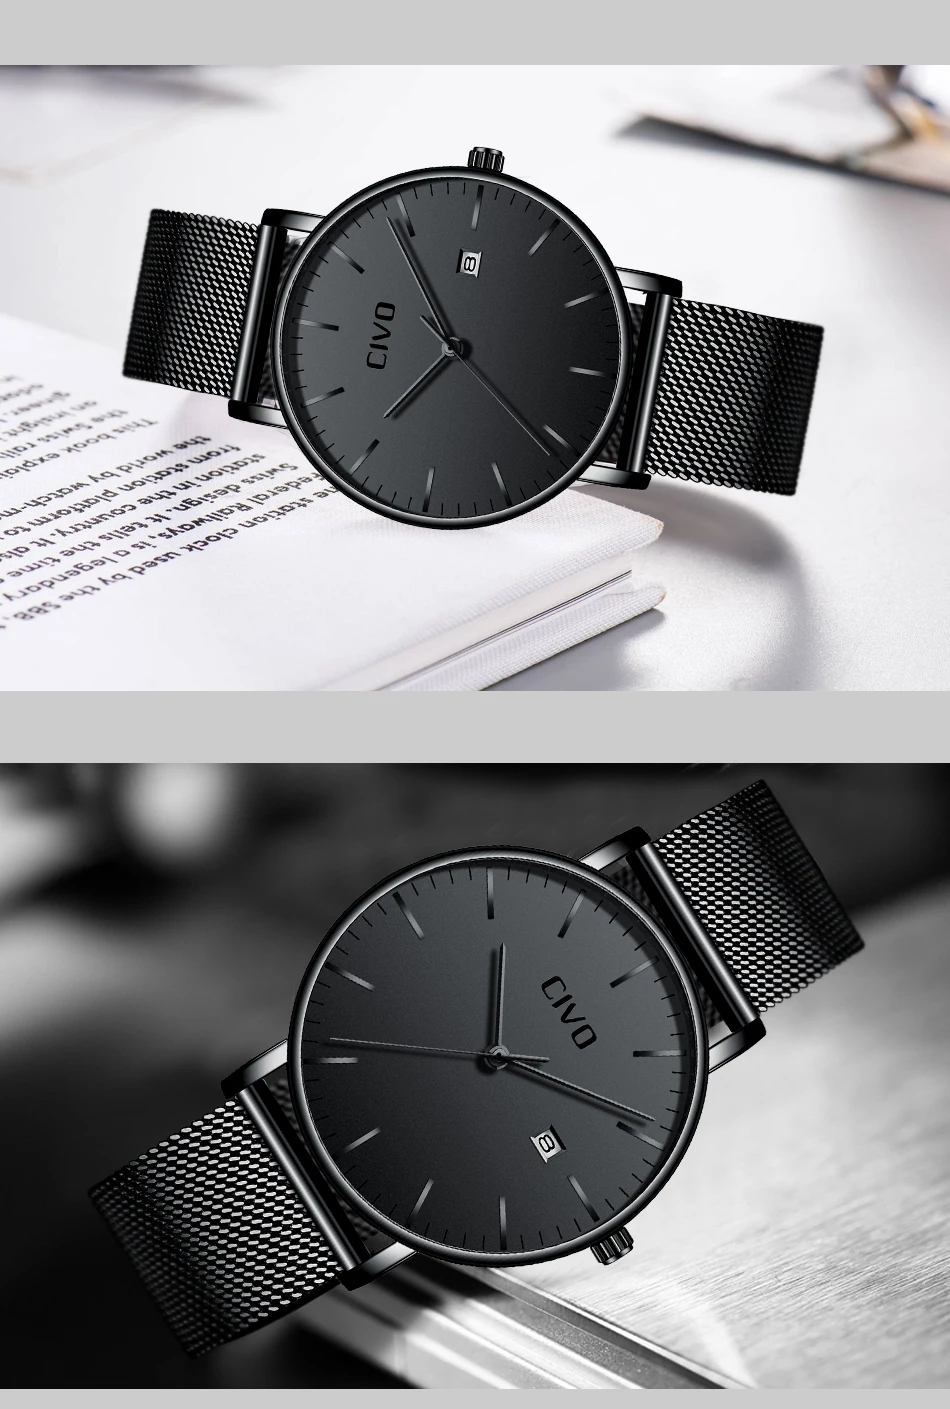 CIVO ультратонкие минималистичные водонепроницаемые Модные мужские часы с датой кварцевые наручные часы для мужчин черные часы из